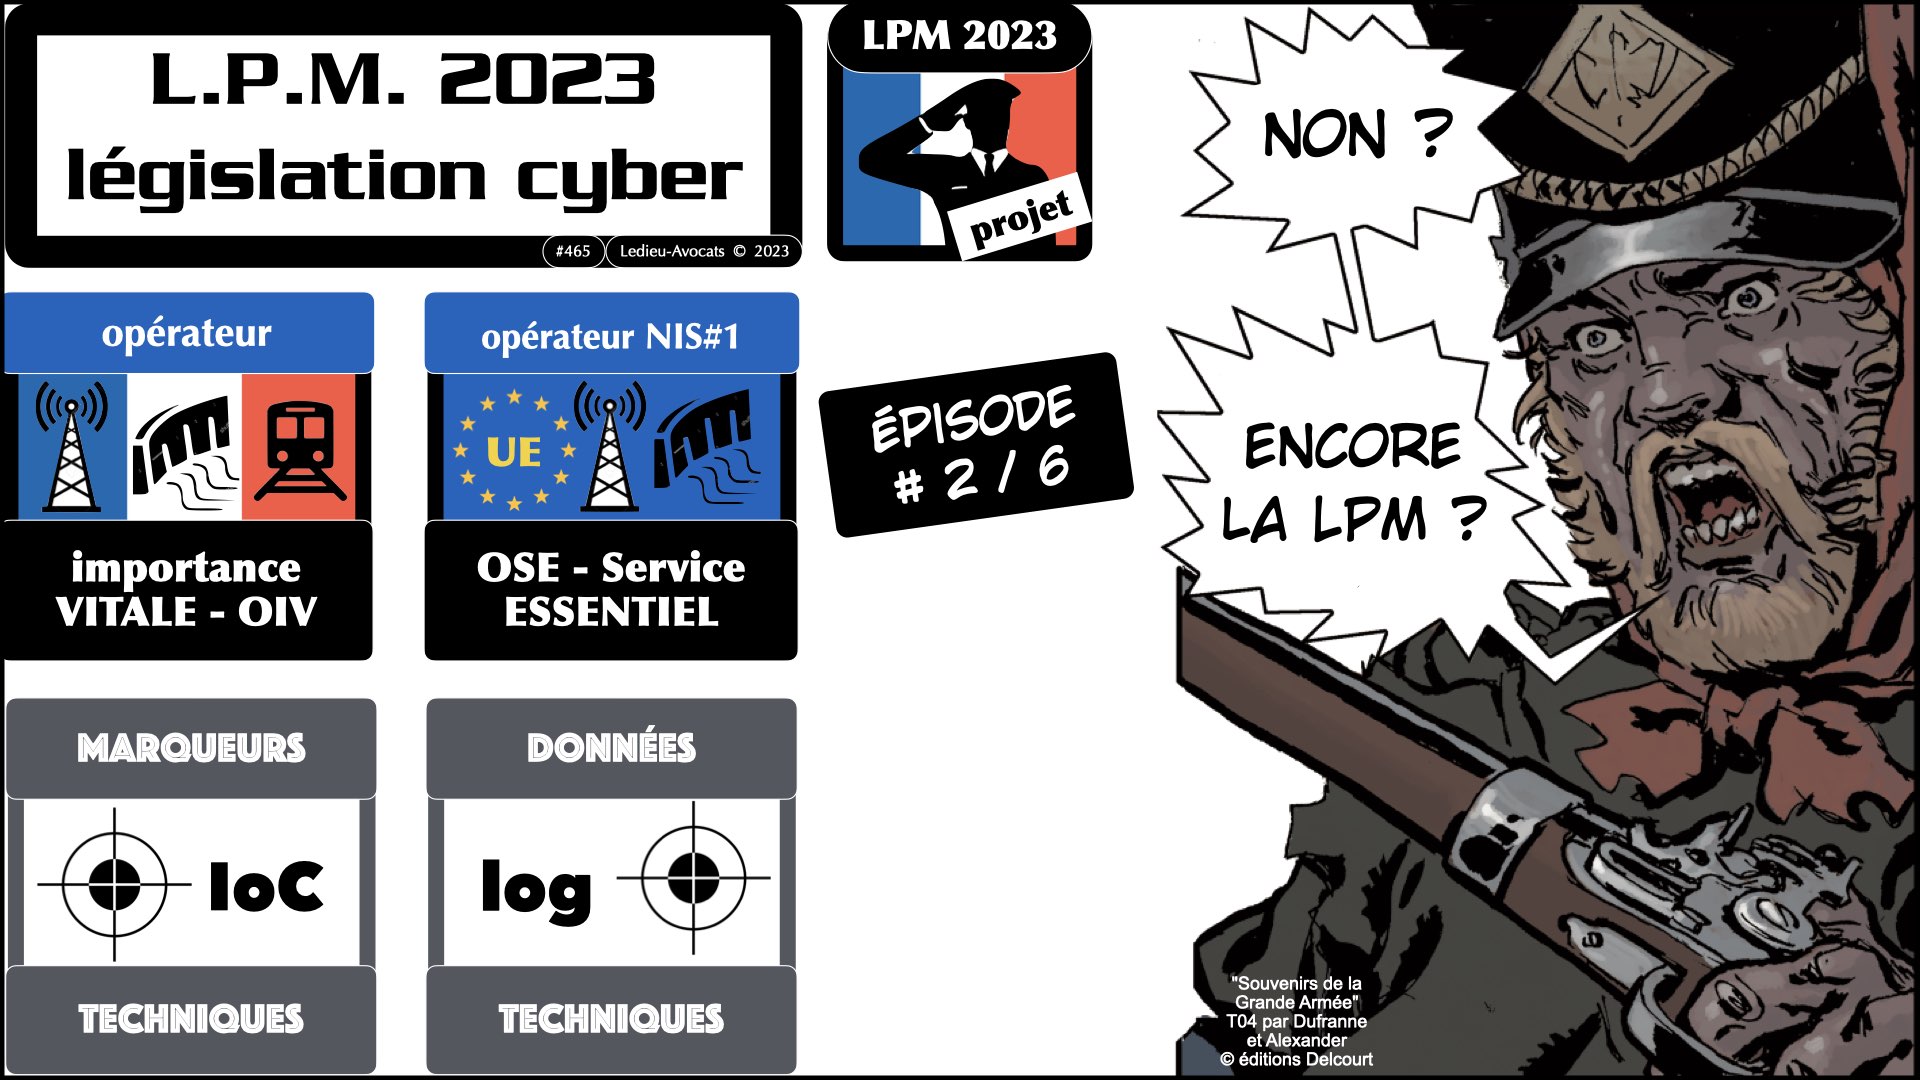 cyber sécurité projet LPM 2023 © Ledieu-Avocats 26-04-2023